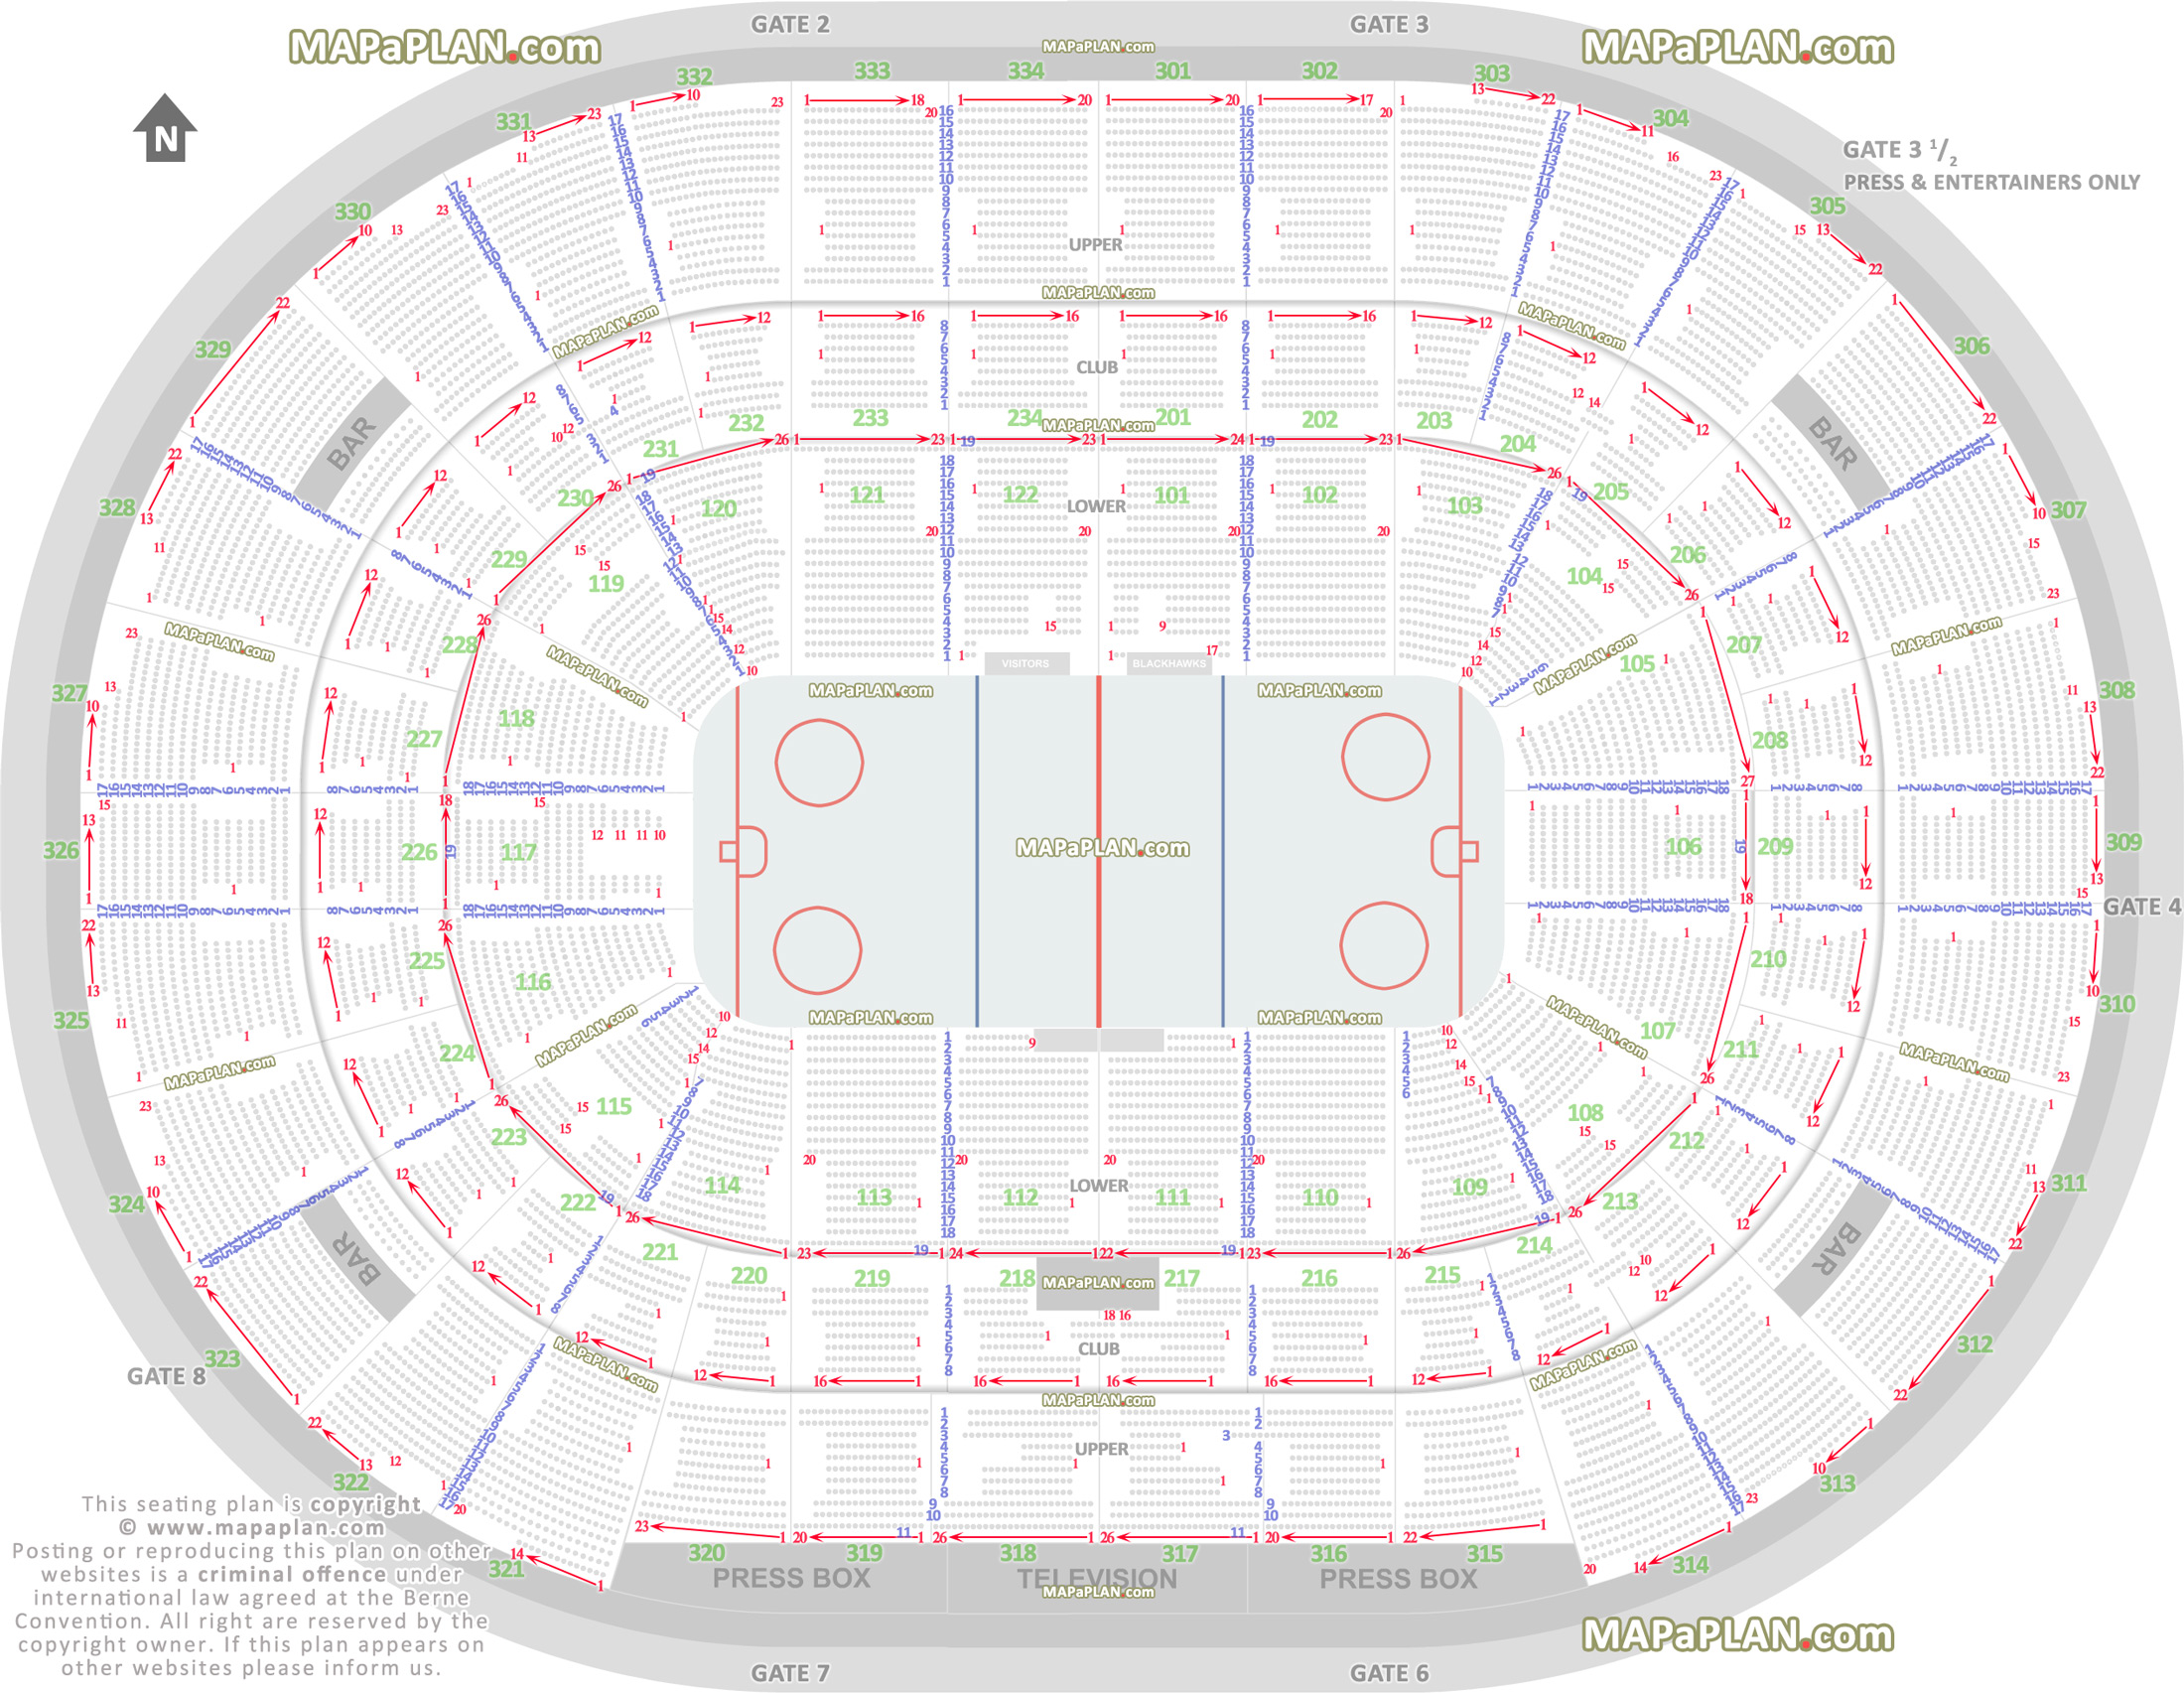 Chicago United Center Chicago Blackhawks NHL hockey game rink diagram